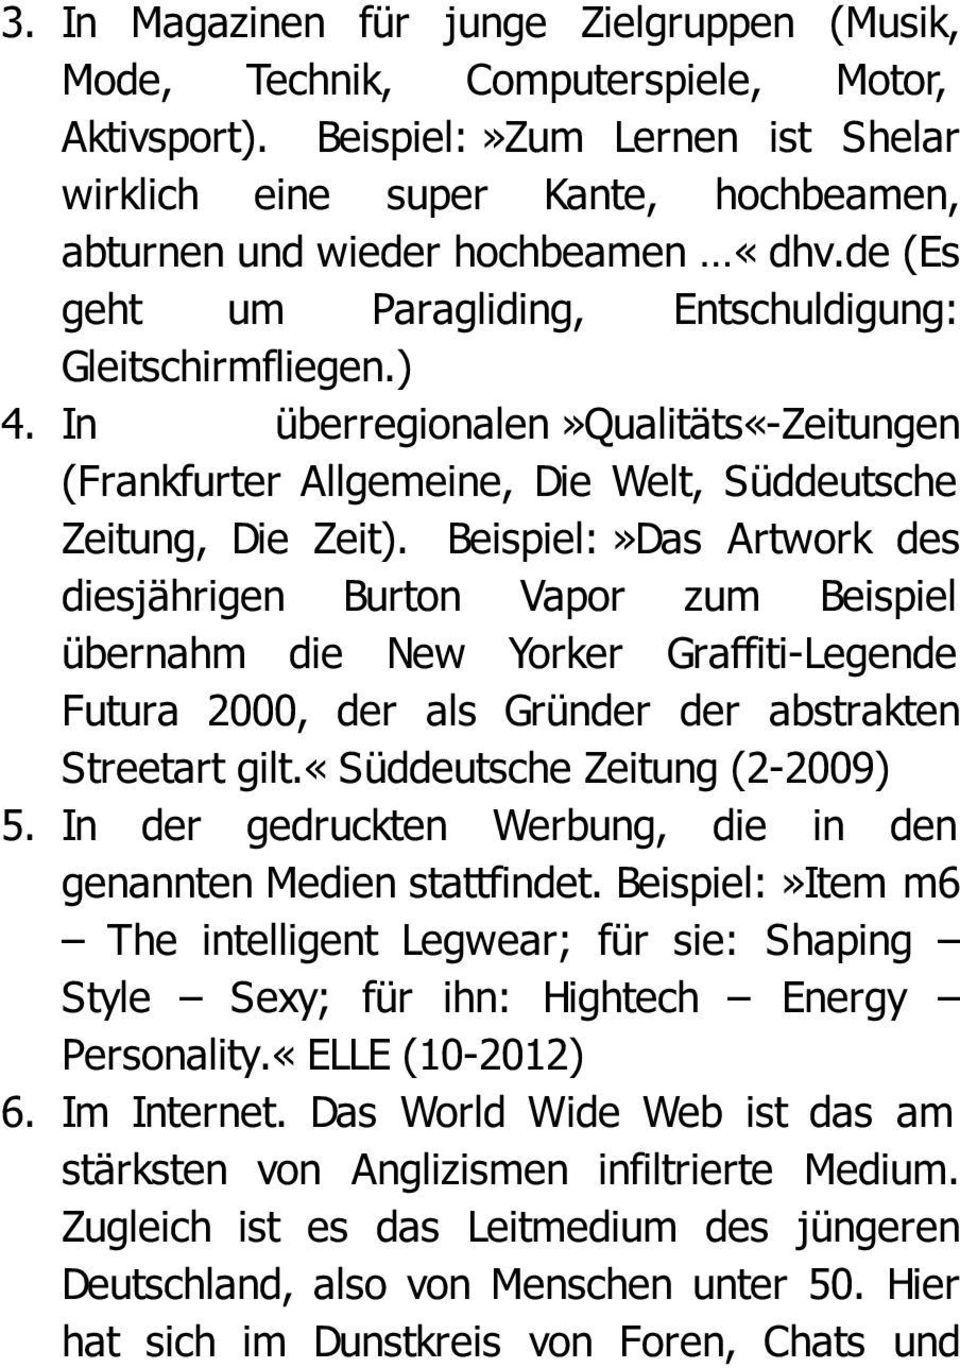 In überregionalen»qualitäts«-zeitungen (Frankfurter Allgemeine, Die Welt, Süddeutsche Zeitung, Die Zeit).